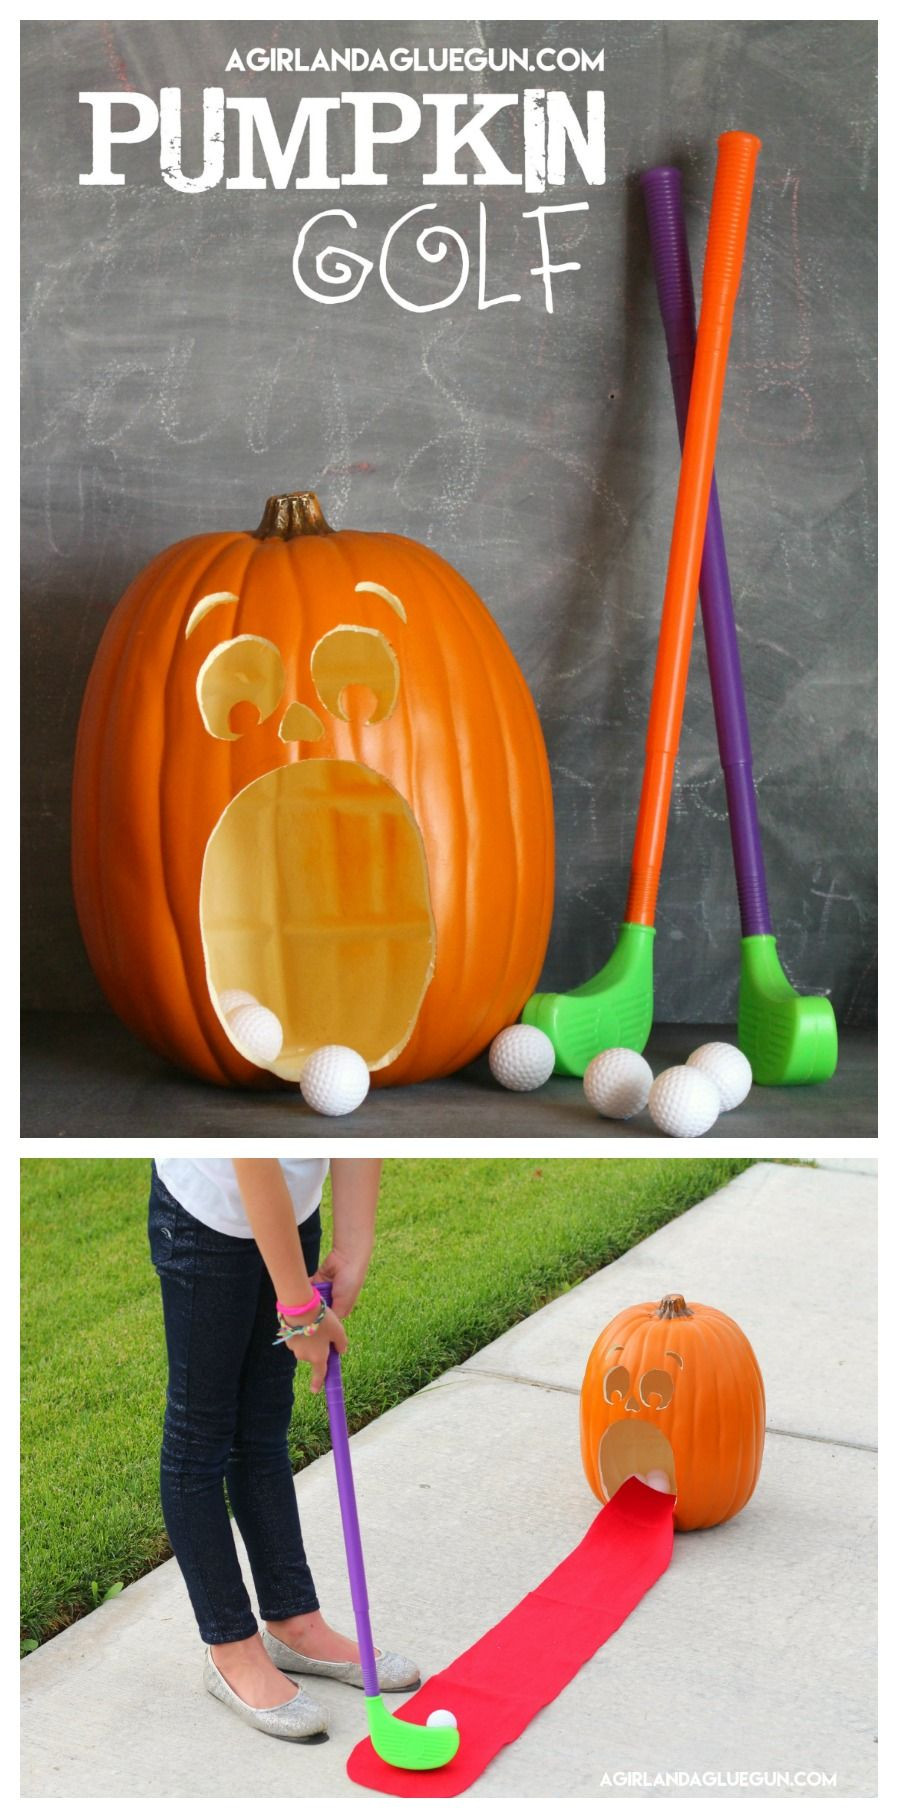 Preschool Halloween Party Game Ideas
 Pumpkin Golf